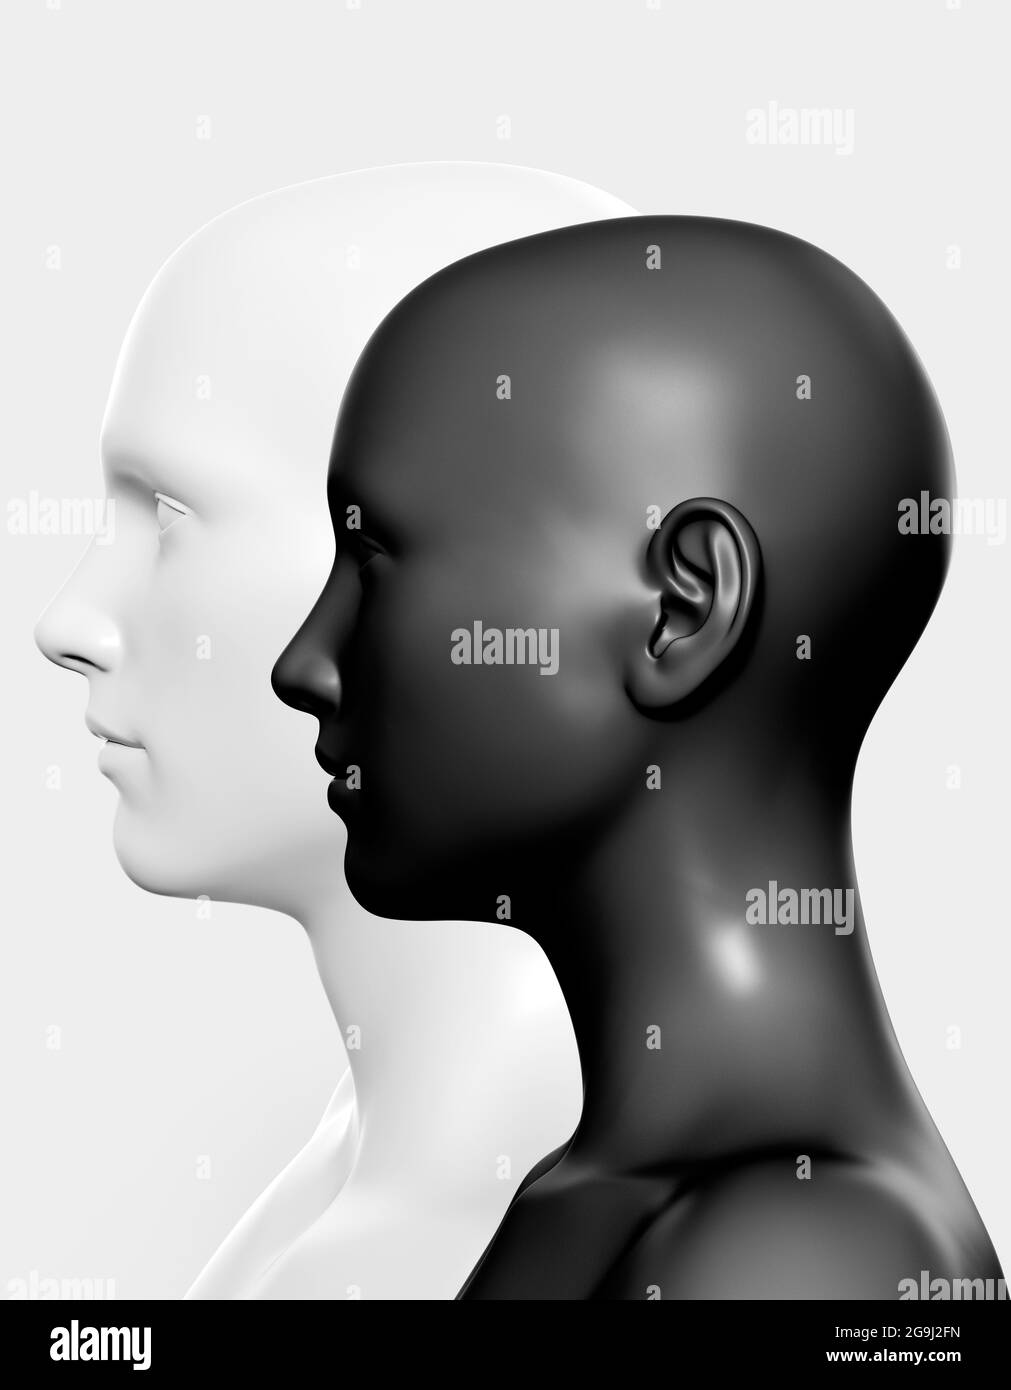 illustration de rendu 3d des visages mâle et femelle gris clair et noir sur fond gris, concept de psychologie des relations. Banque D'Images